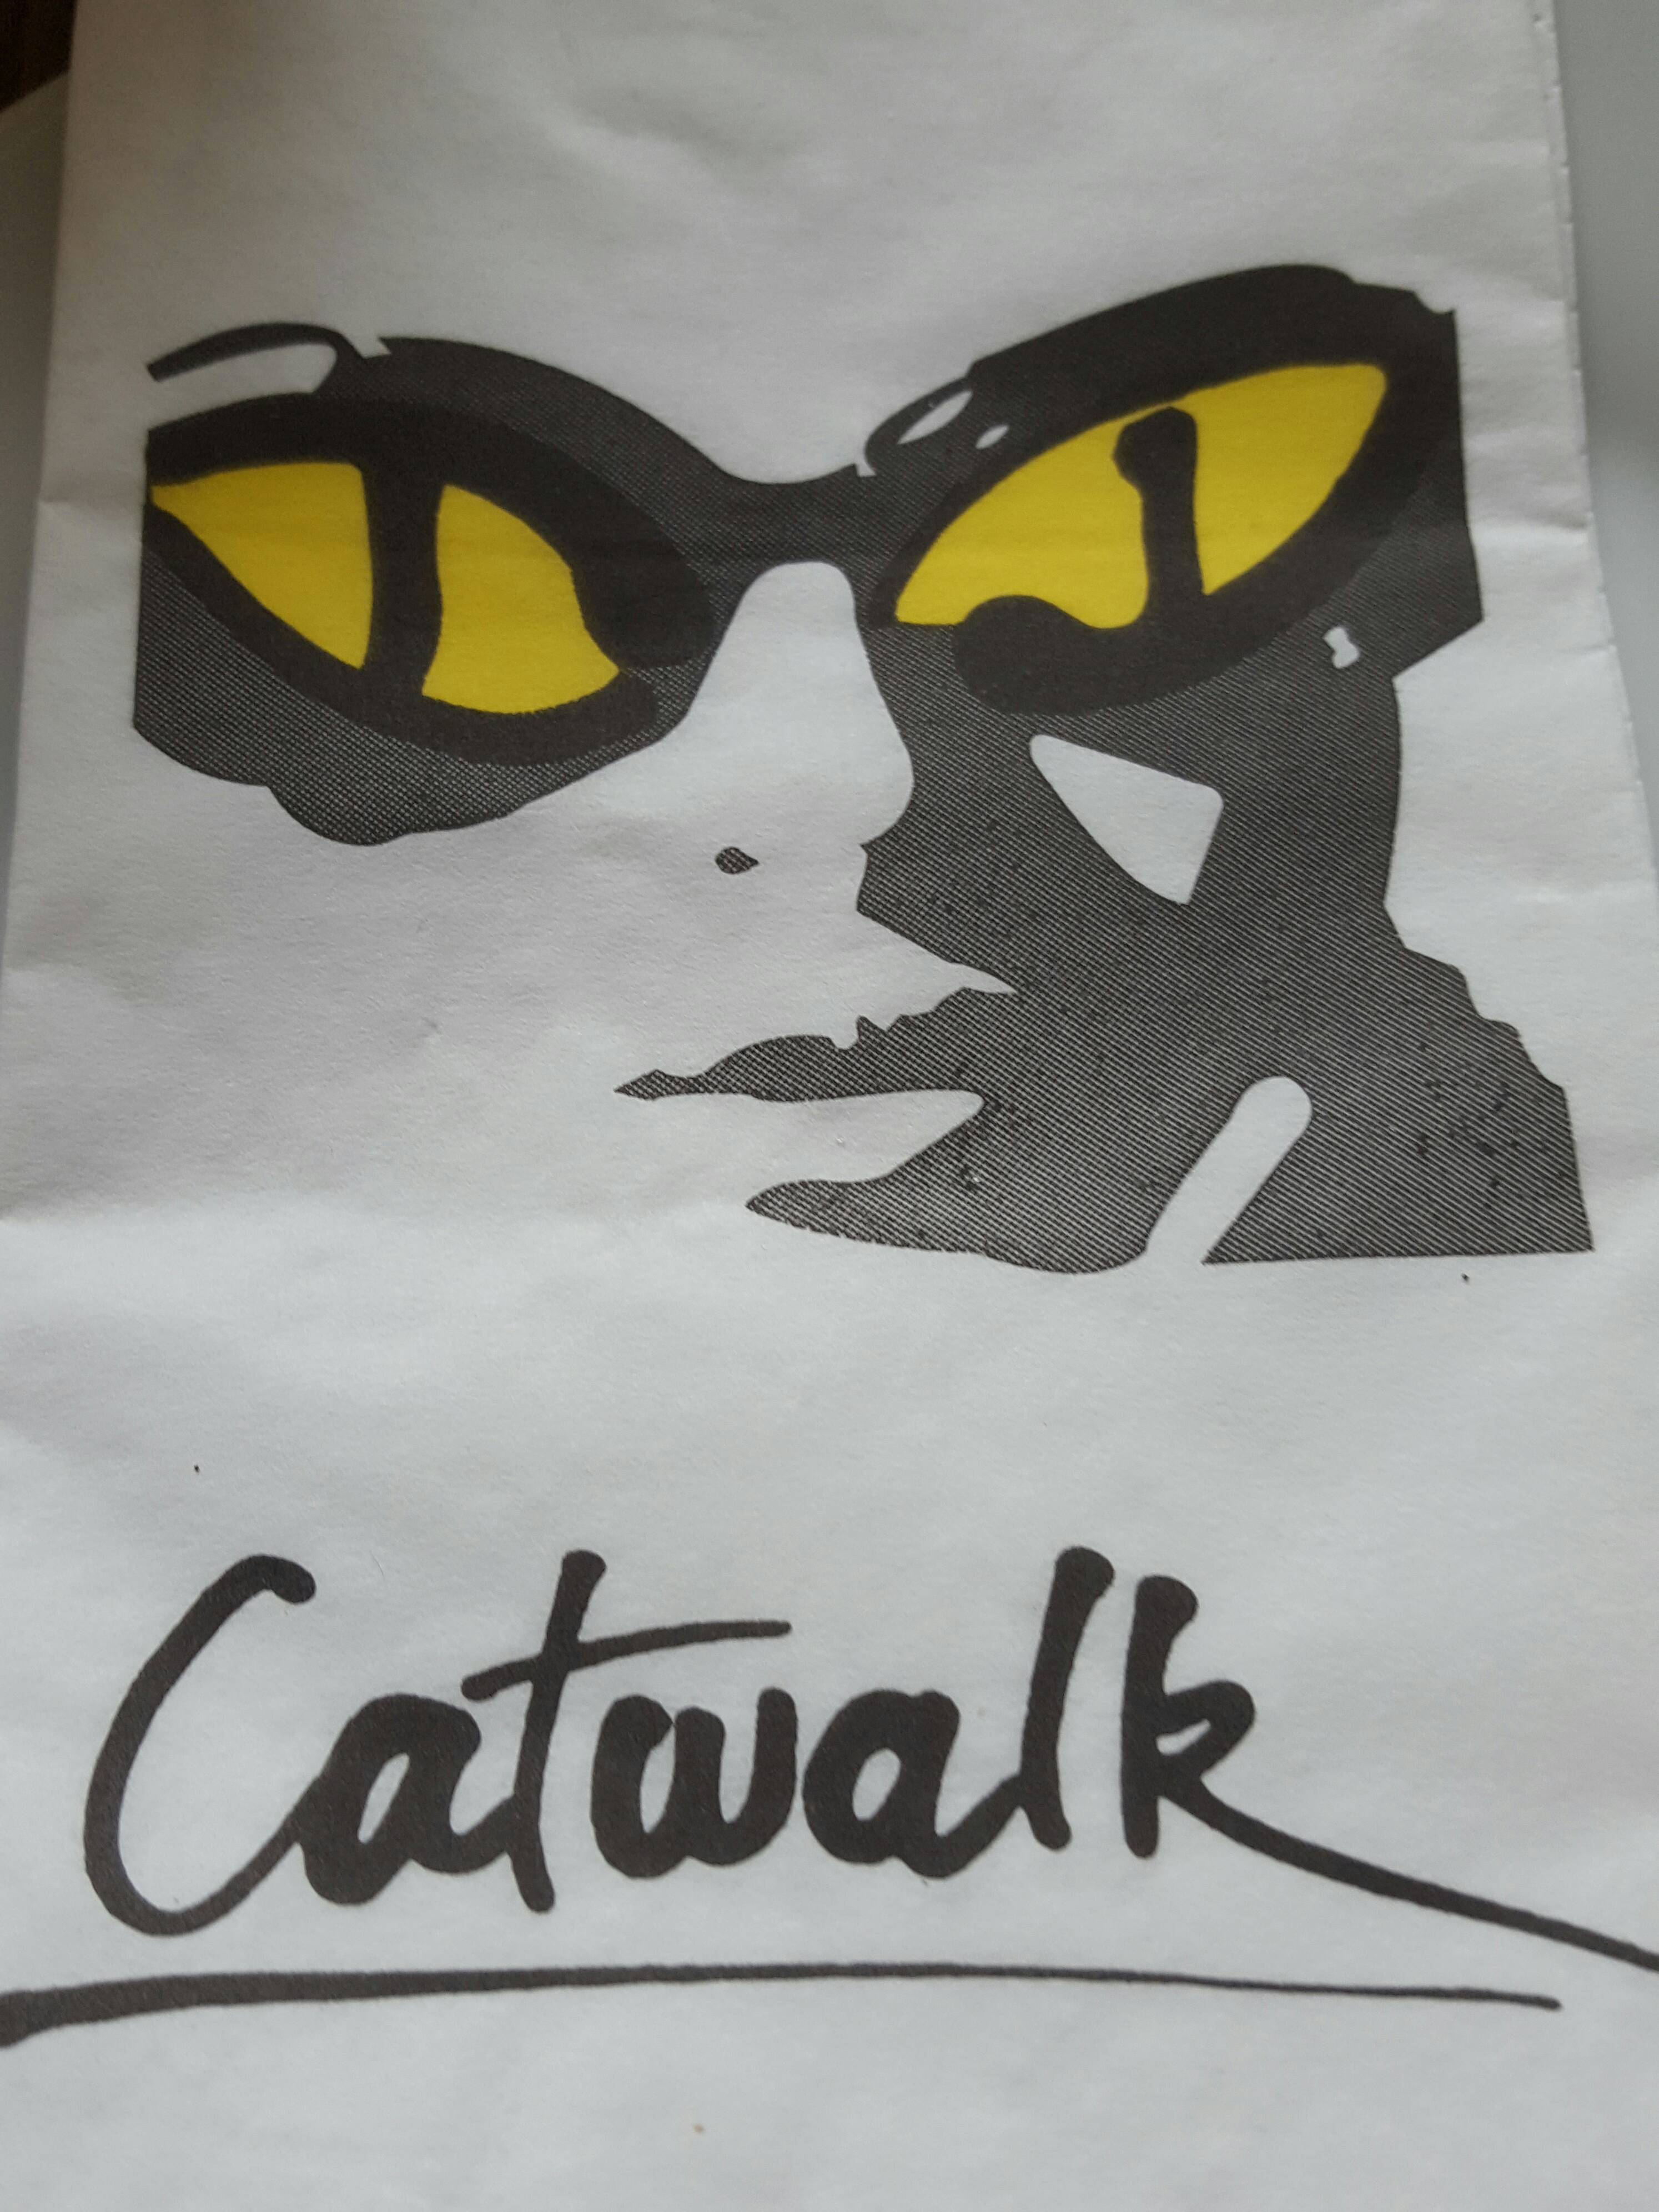 Bild 1 Catwalk in München